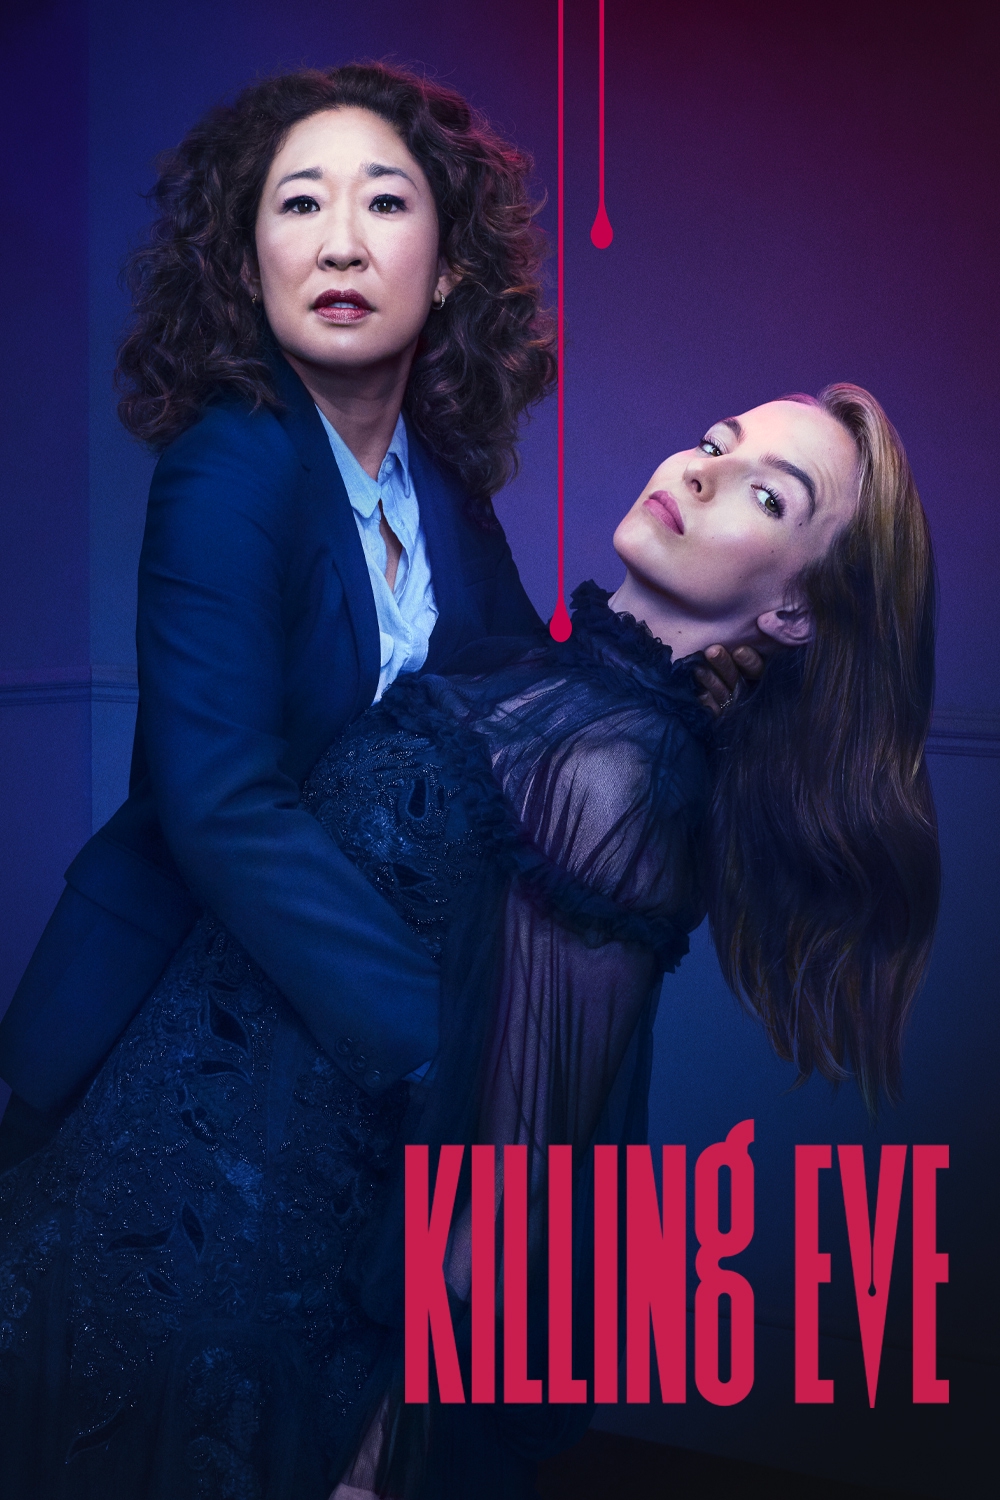 killing eve season 2 episode 2 watch online free